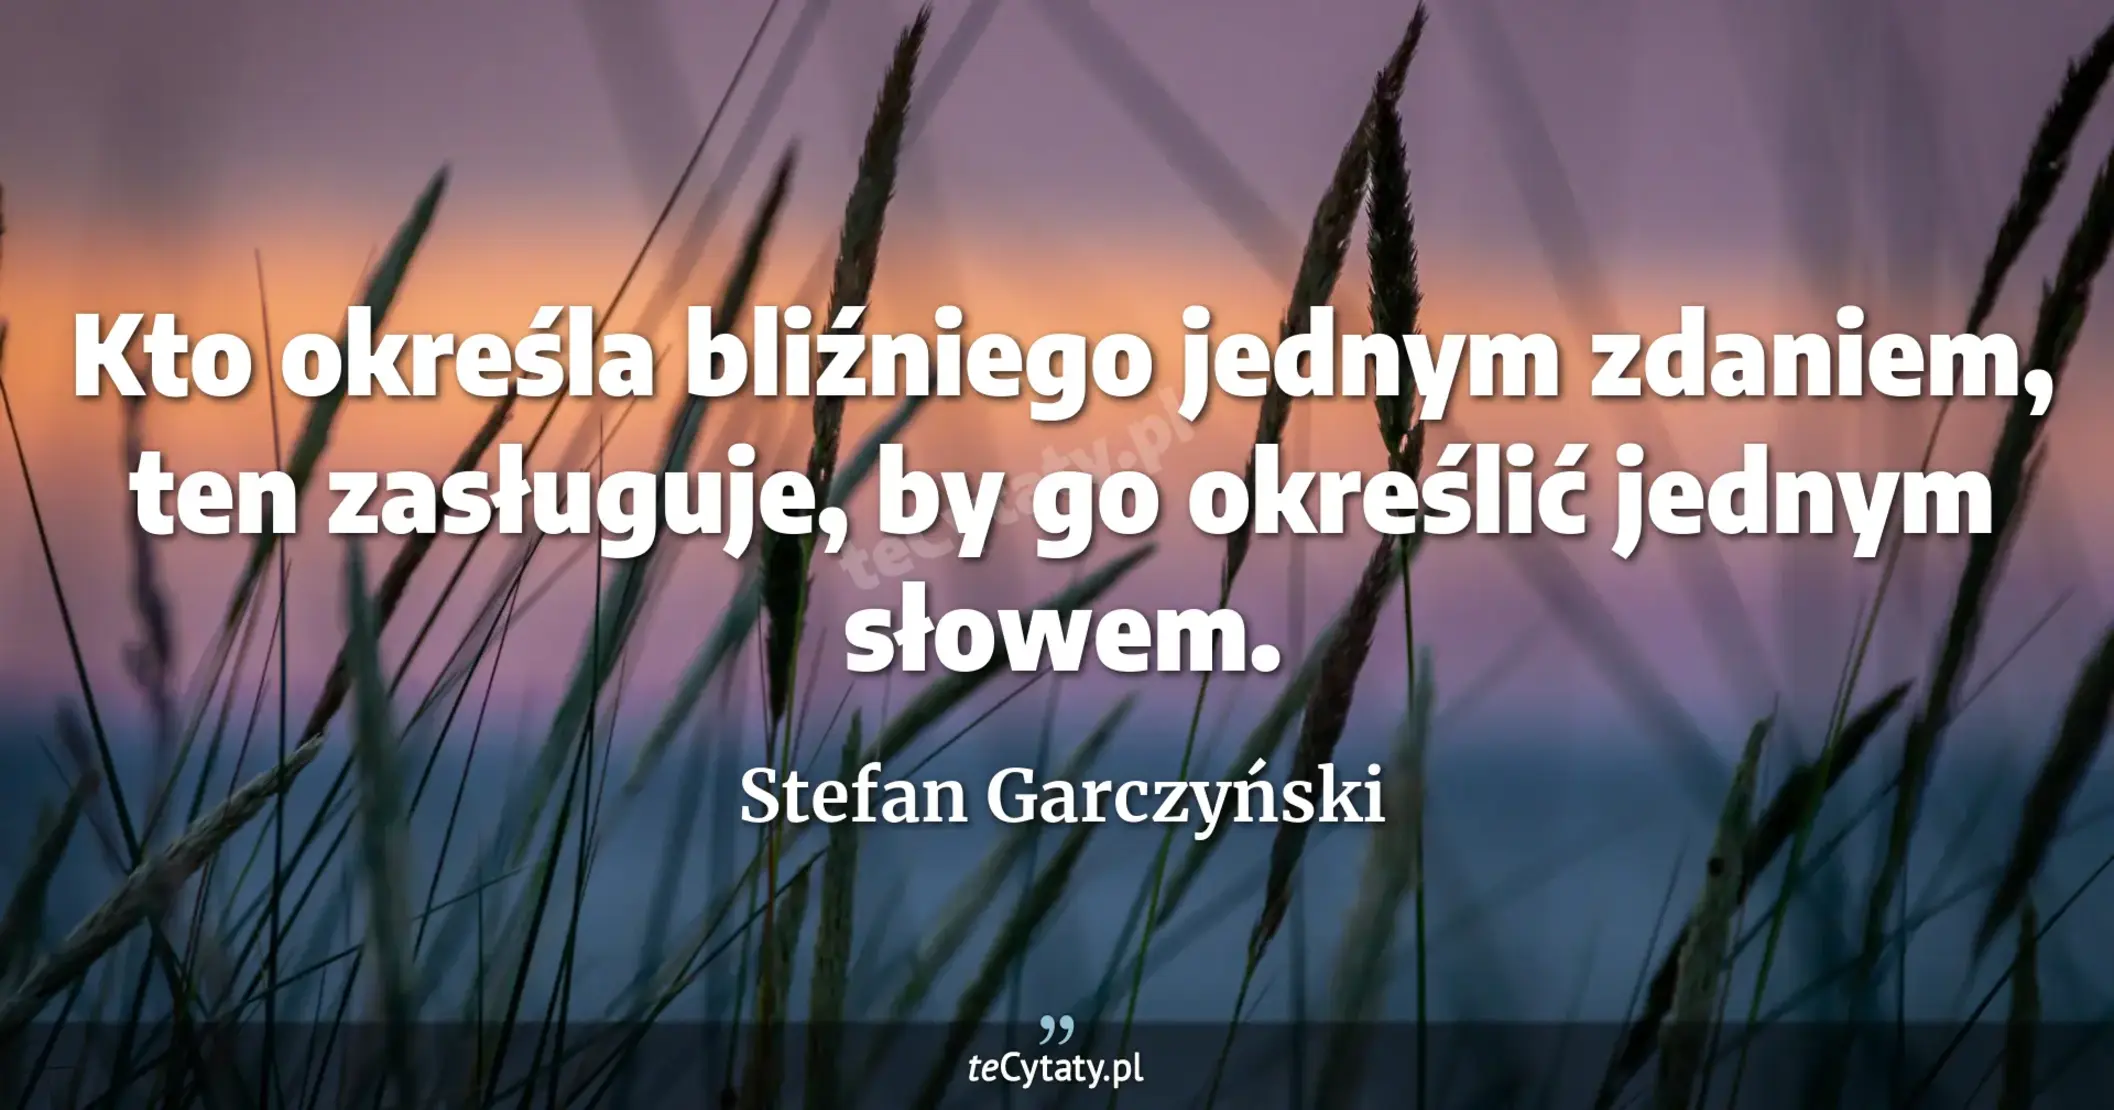 Kto określa bliźniego jednym zdaniem, ten zasługuje, by go określić jednym słowem. - Stefan Garczyński